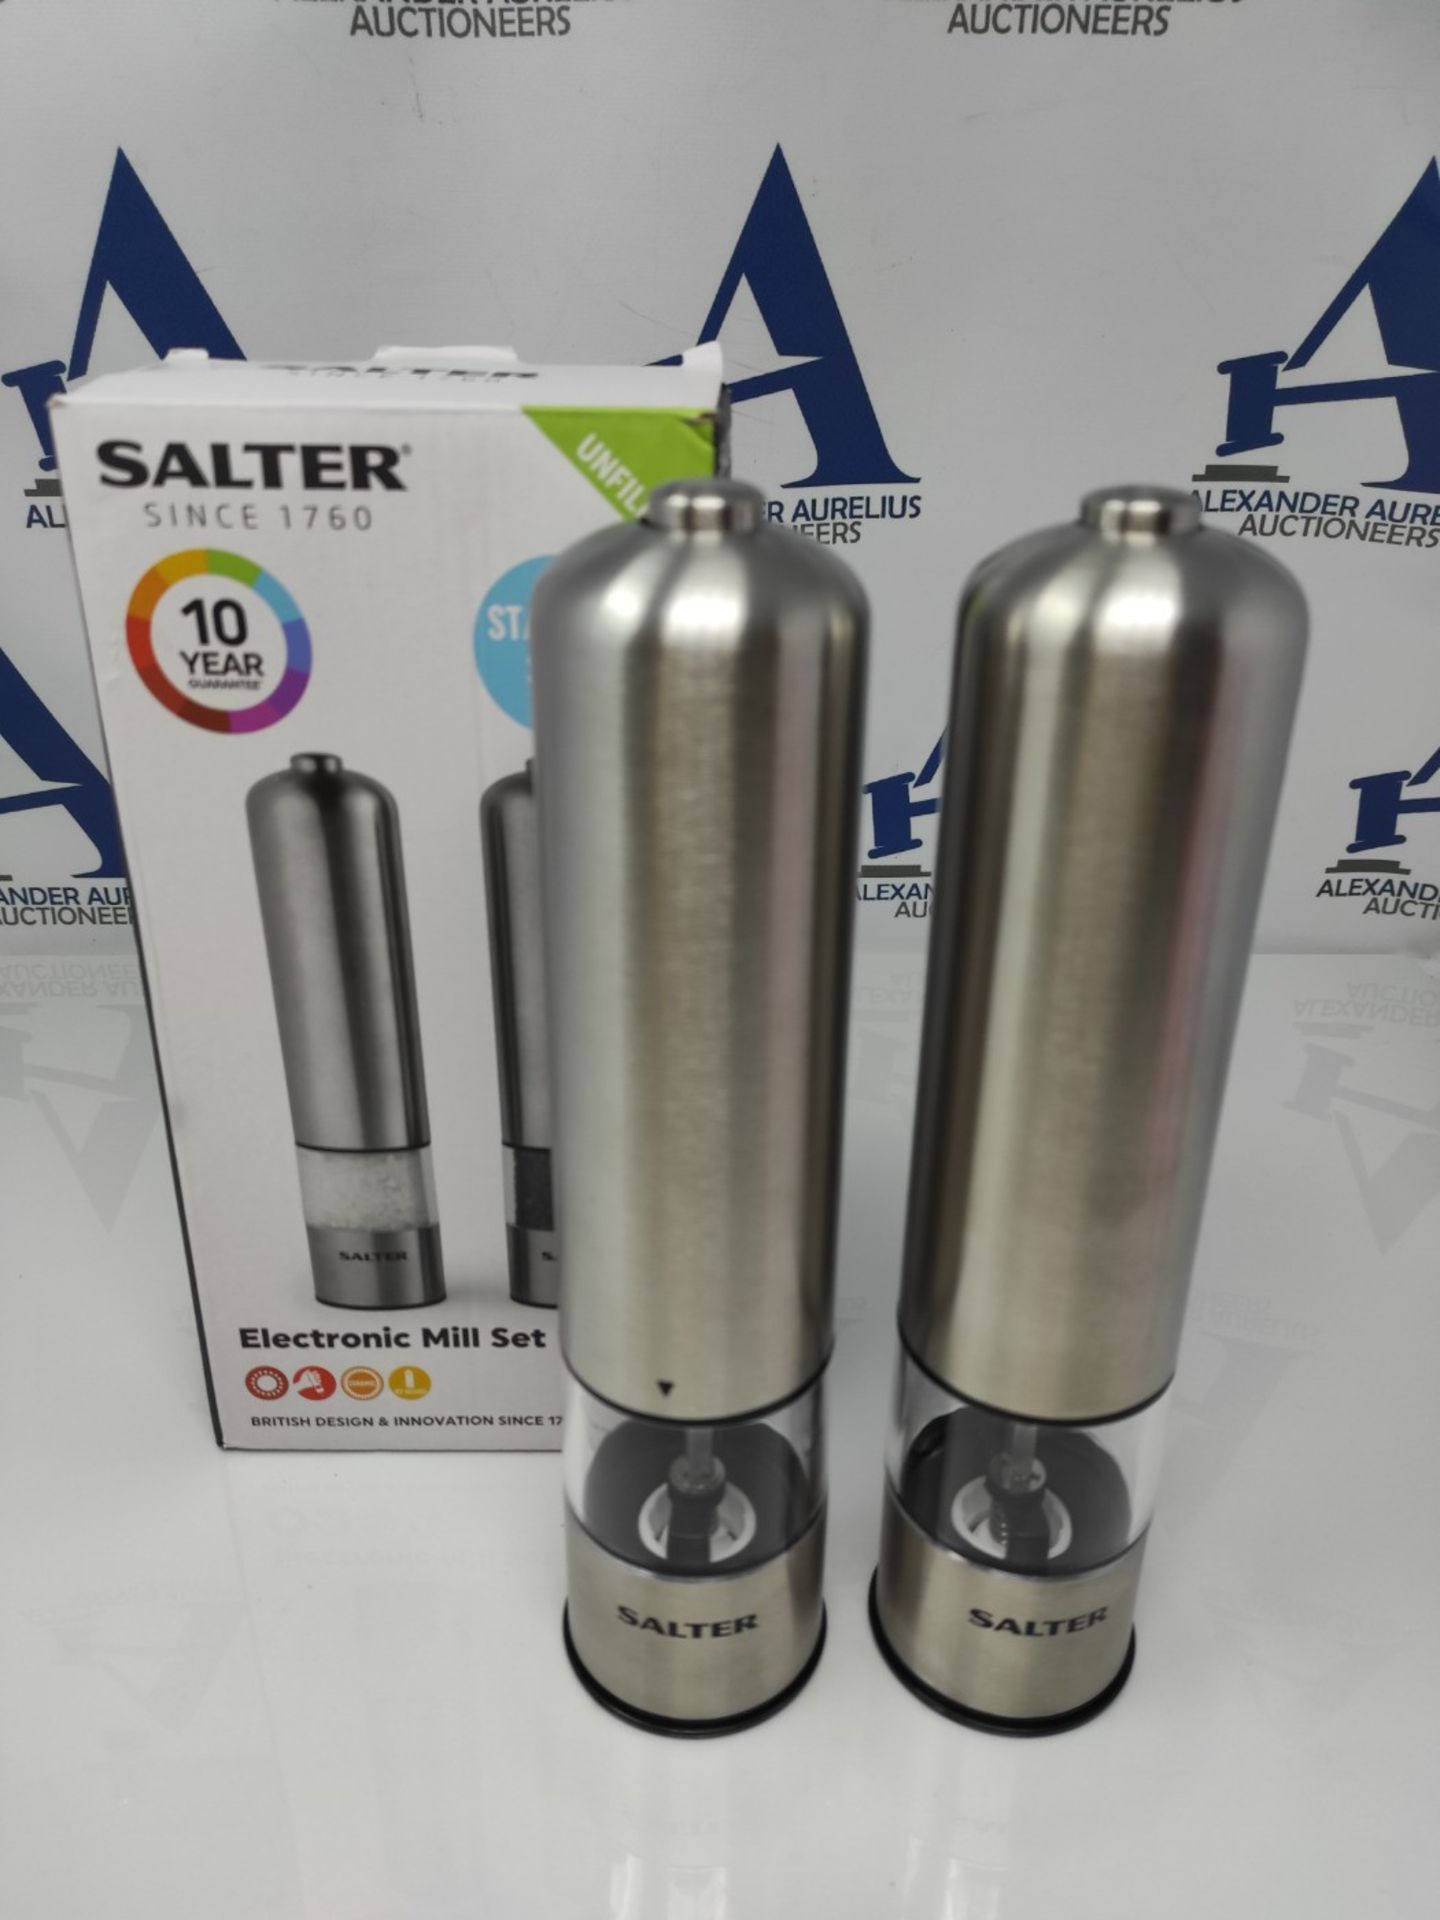 Salter 7722 SSTURA Electric Salt & Pepper Grinder Set - BPA-Free, Spice Mills, One Han - Image 2 of 2